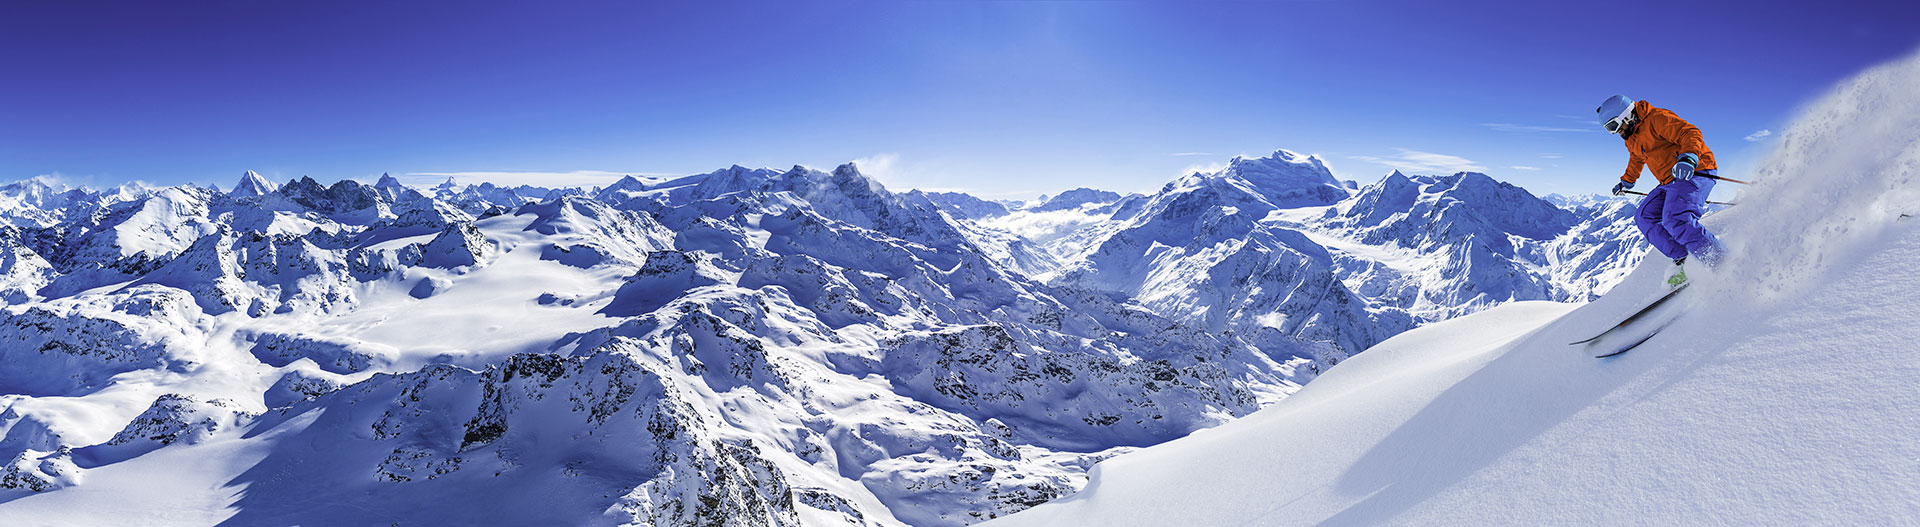 Snowy-Verbier-Switzerland